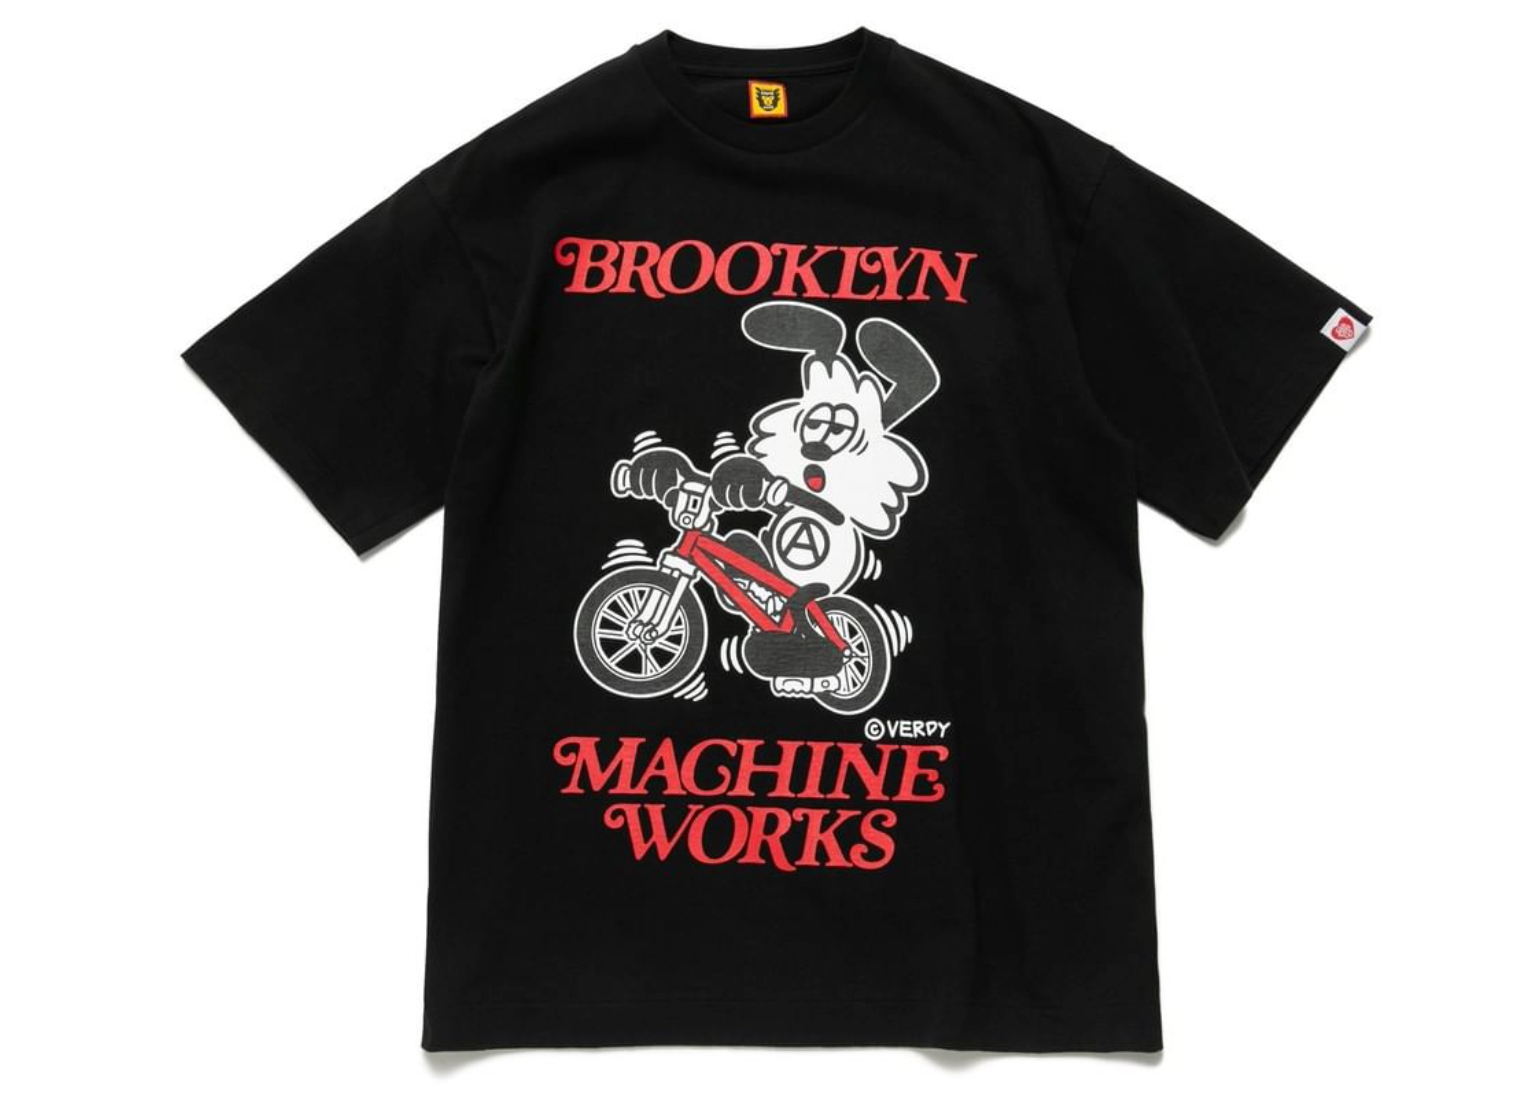 human made×Brooklyn machine works